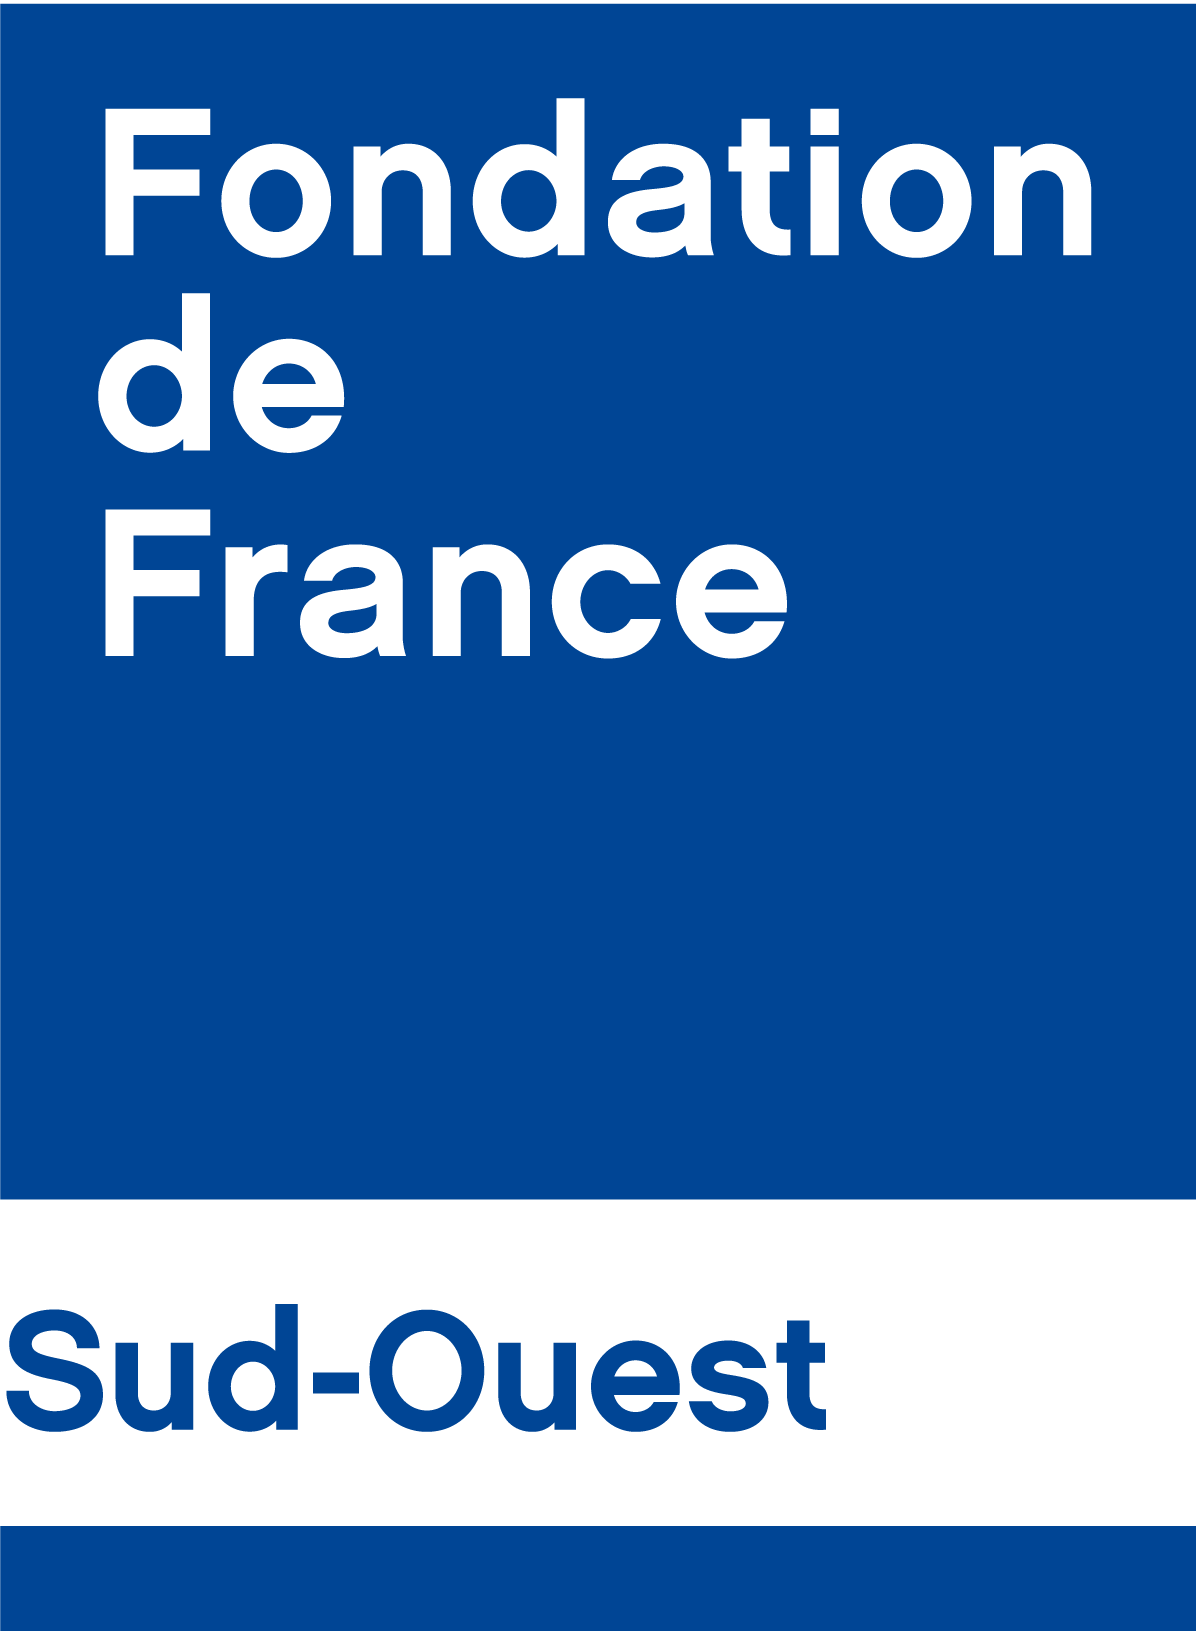 Fondation de France Sud Ouest